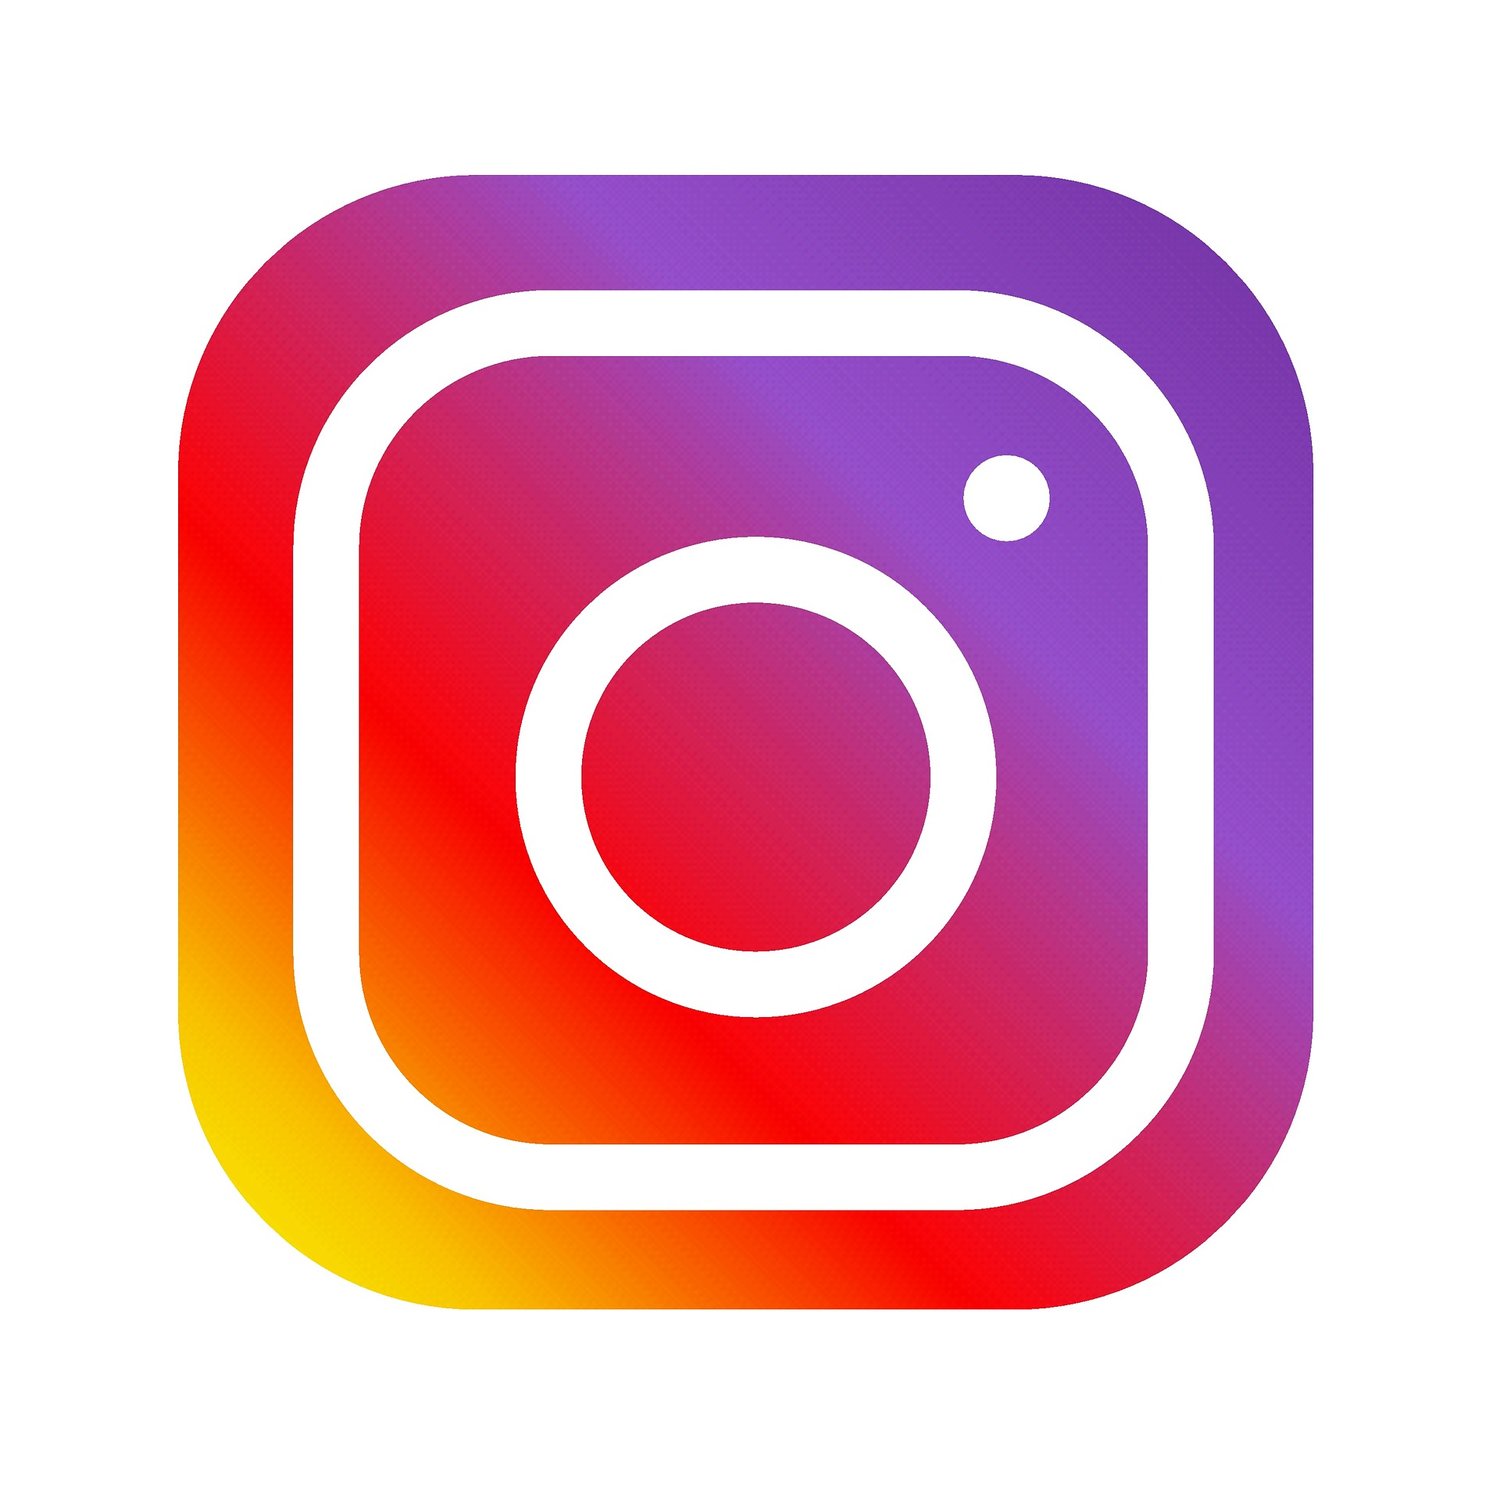 Gestire le immagini per Instagram — Flarescape